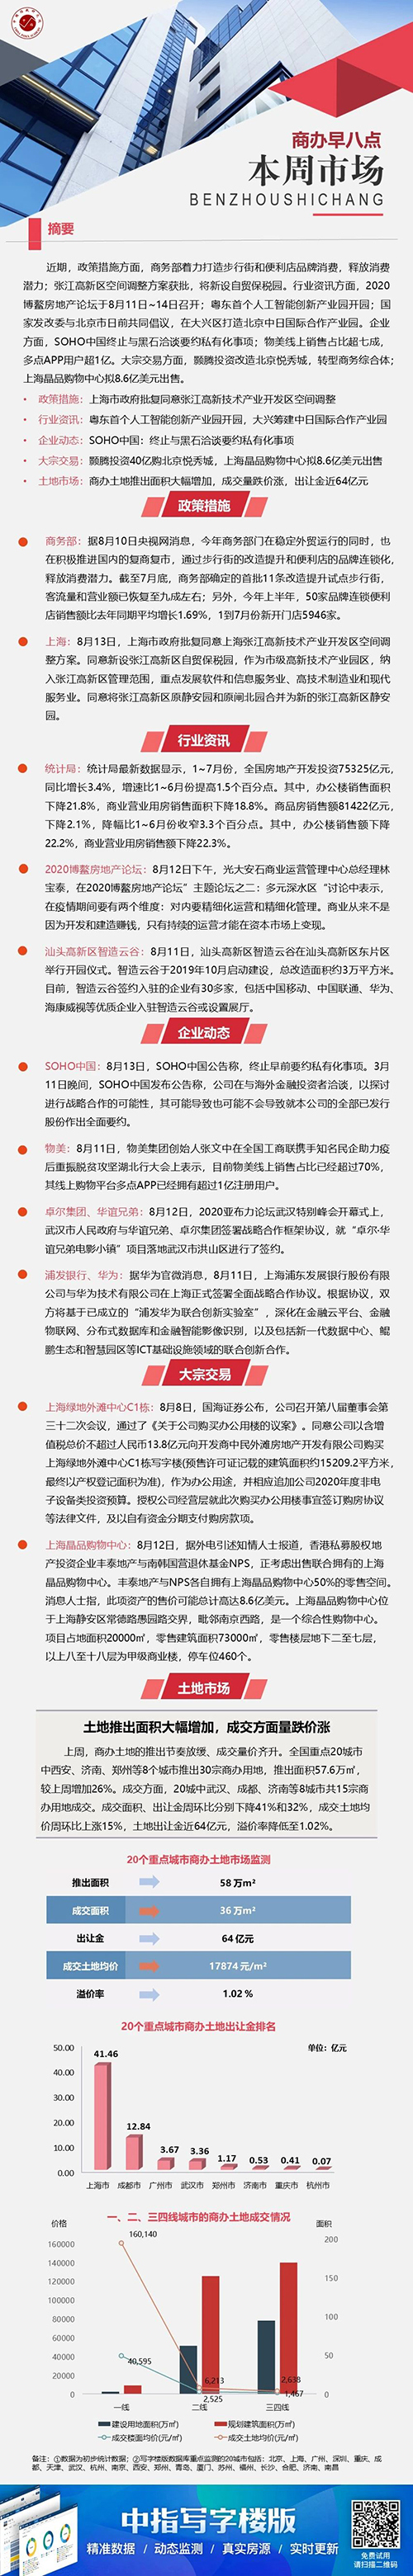 商办：国海证券13.8亿购上海绿地外滩中心C1栋写字楼 SOHO中国终止与黑石洽谈要约私有化事项